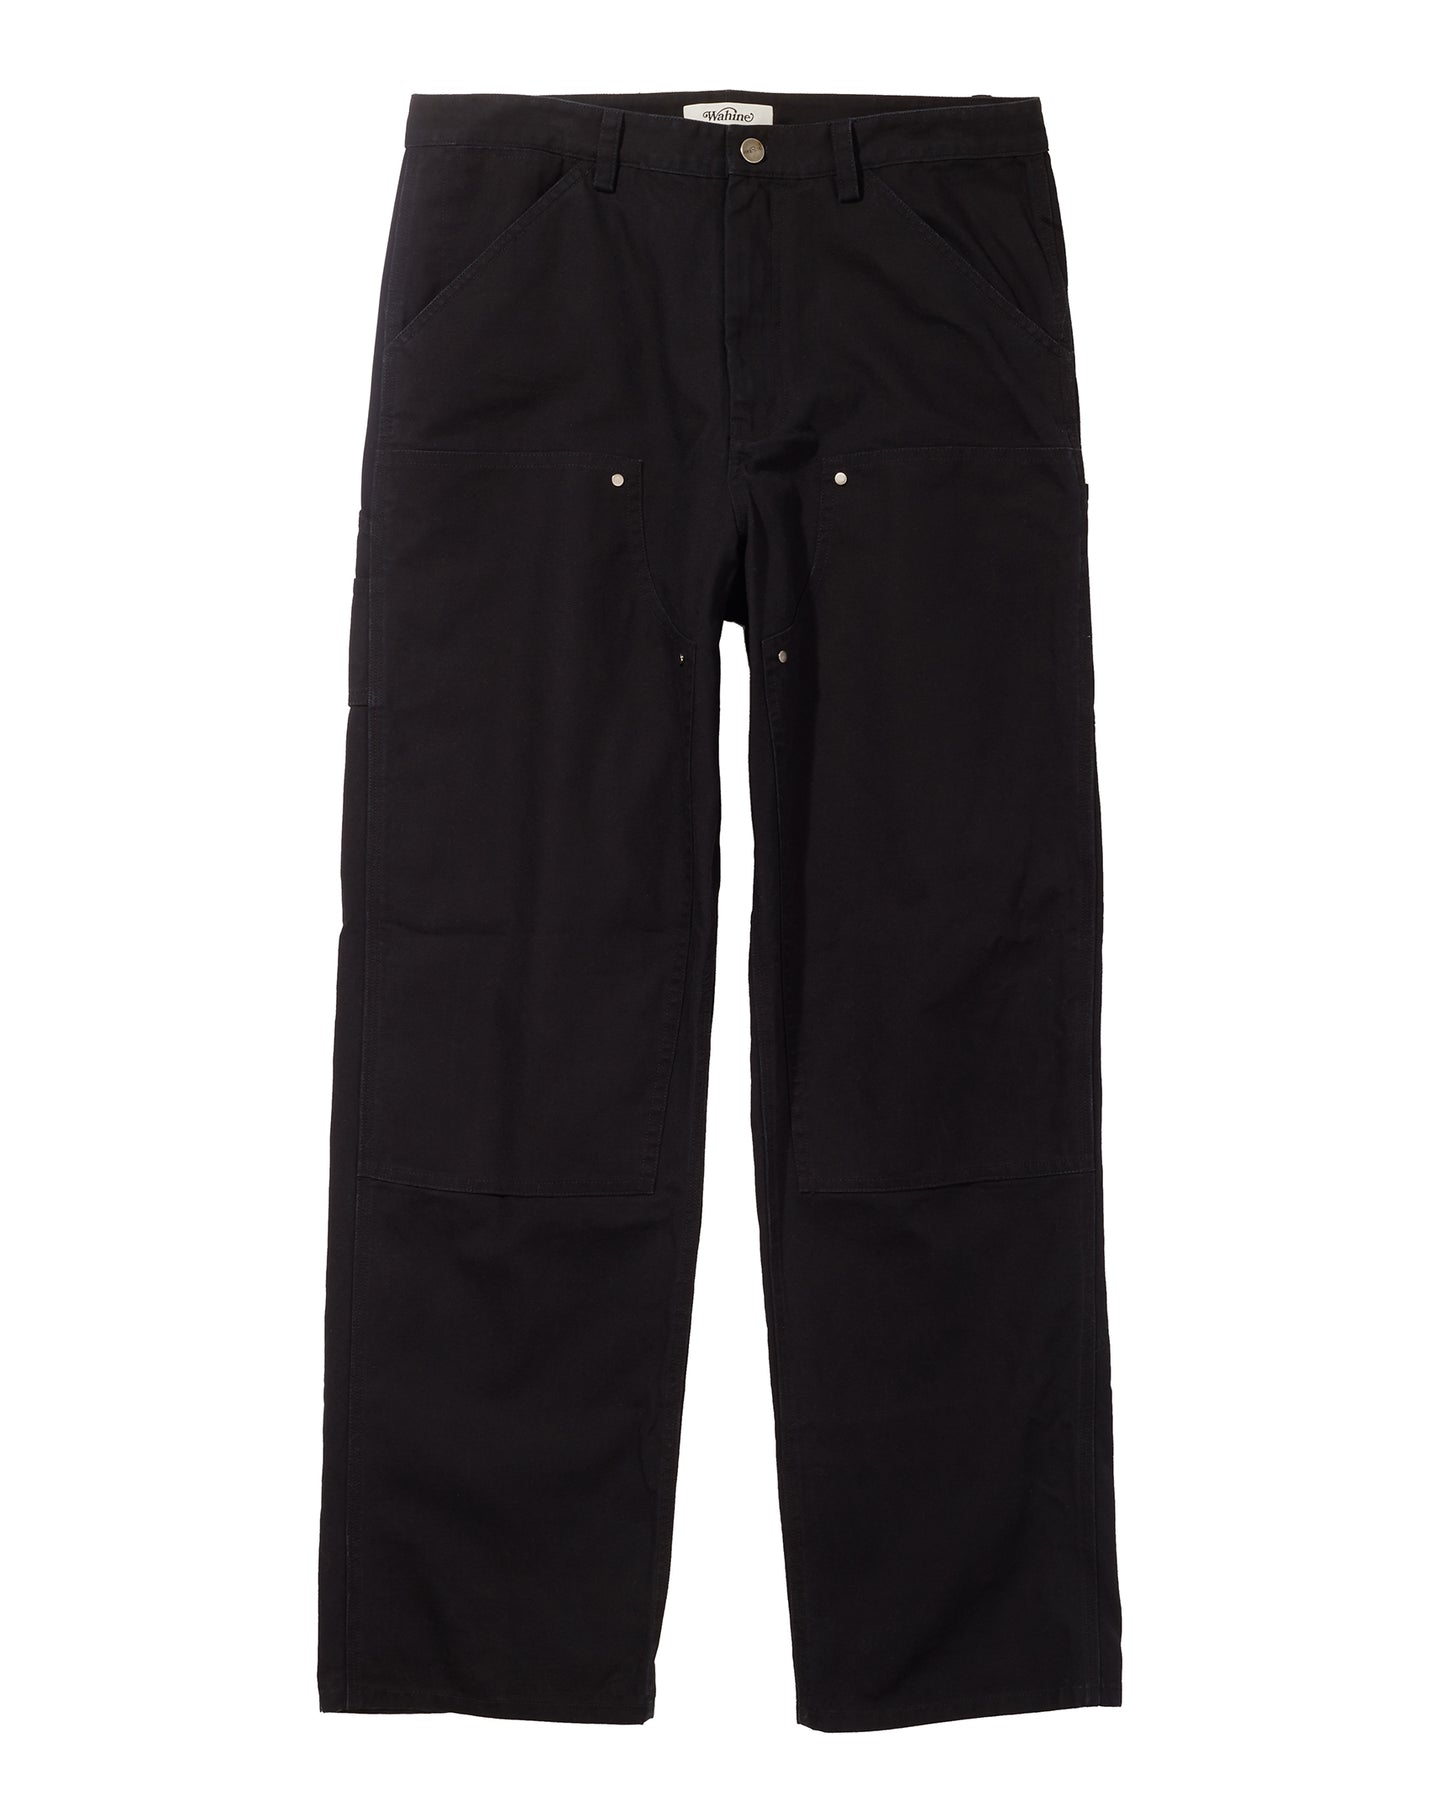 Black Sugar Cane Workwear Pants